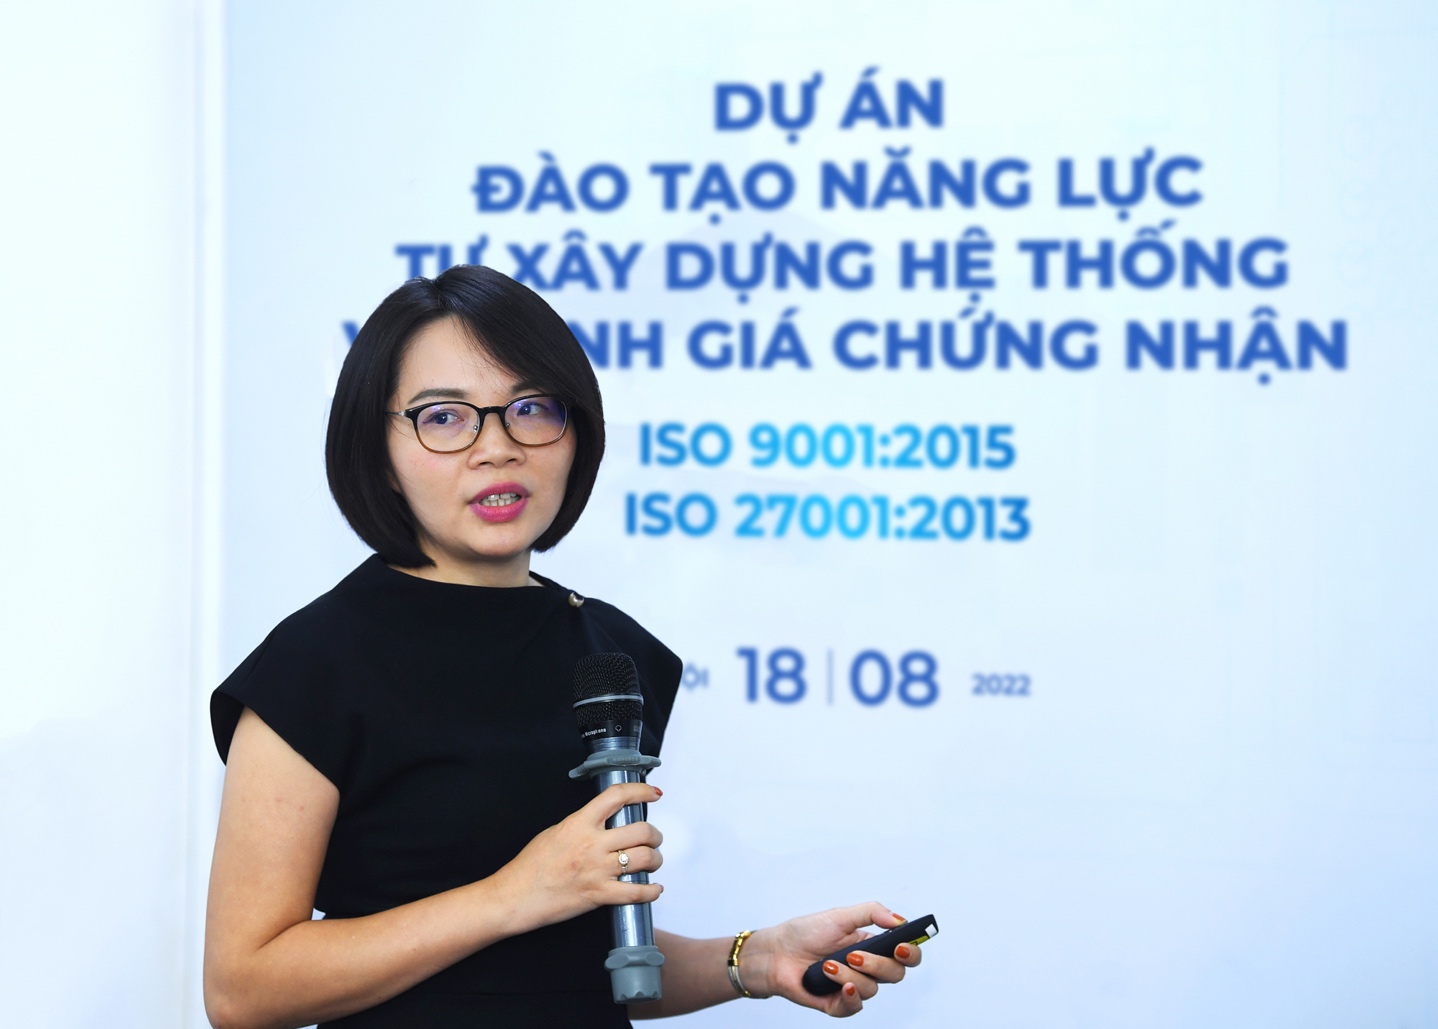 BSI Việt Nam: Đào tạo năng lực tự xây dựng và đánh giá chứng nhận ISO 9001:2015 và ISO 27001:2013 - Ảnh 3.